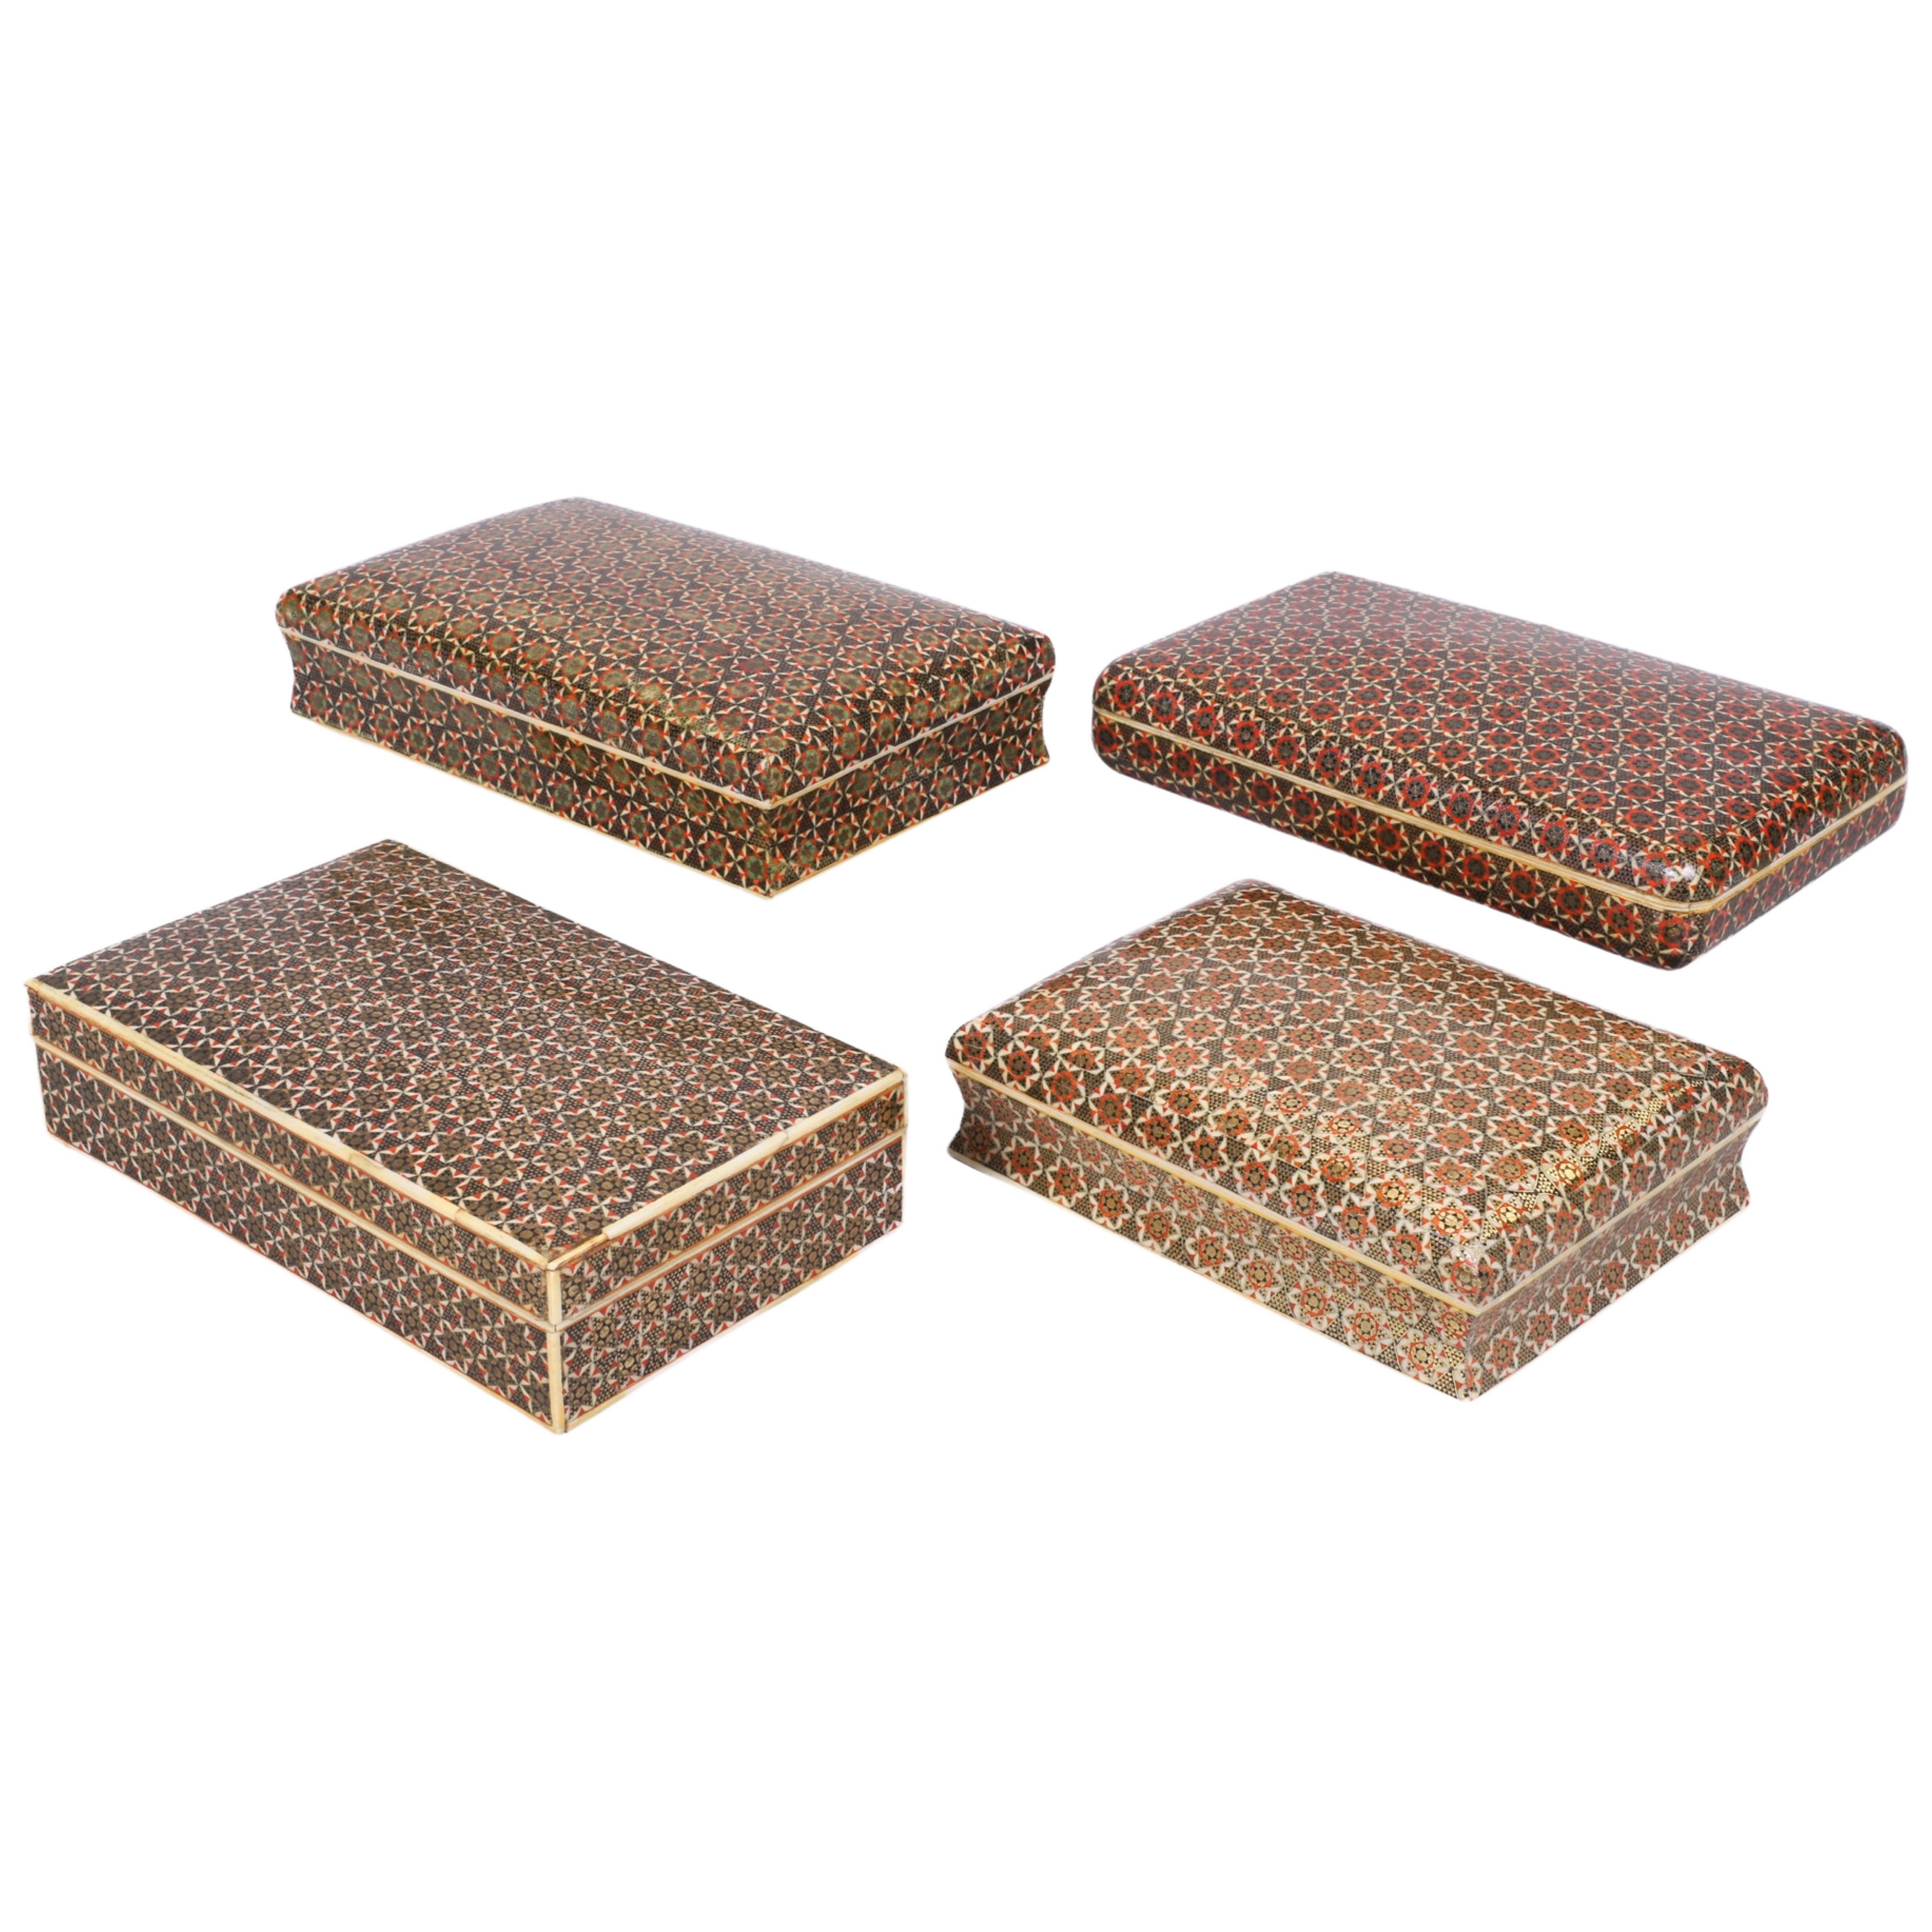 (4) Persian Khatam boxes,6-1/2"L,